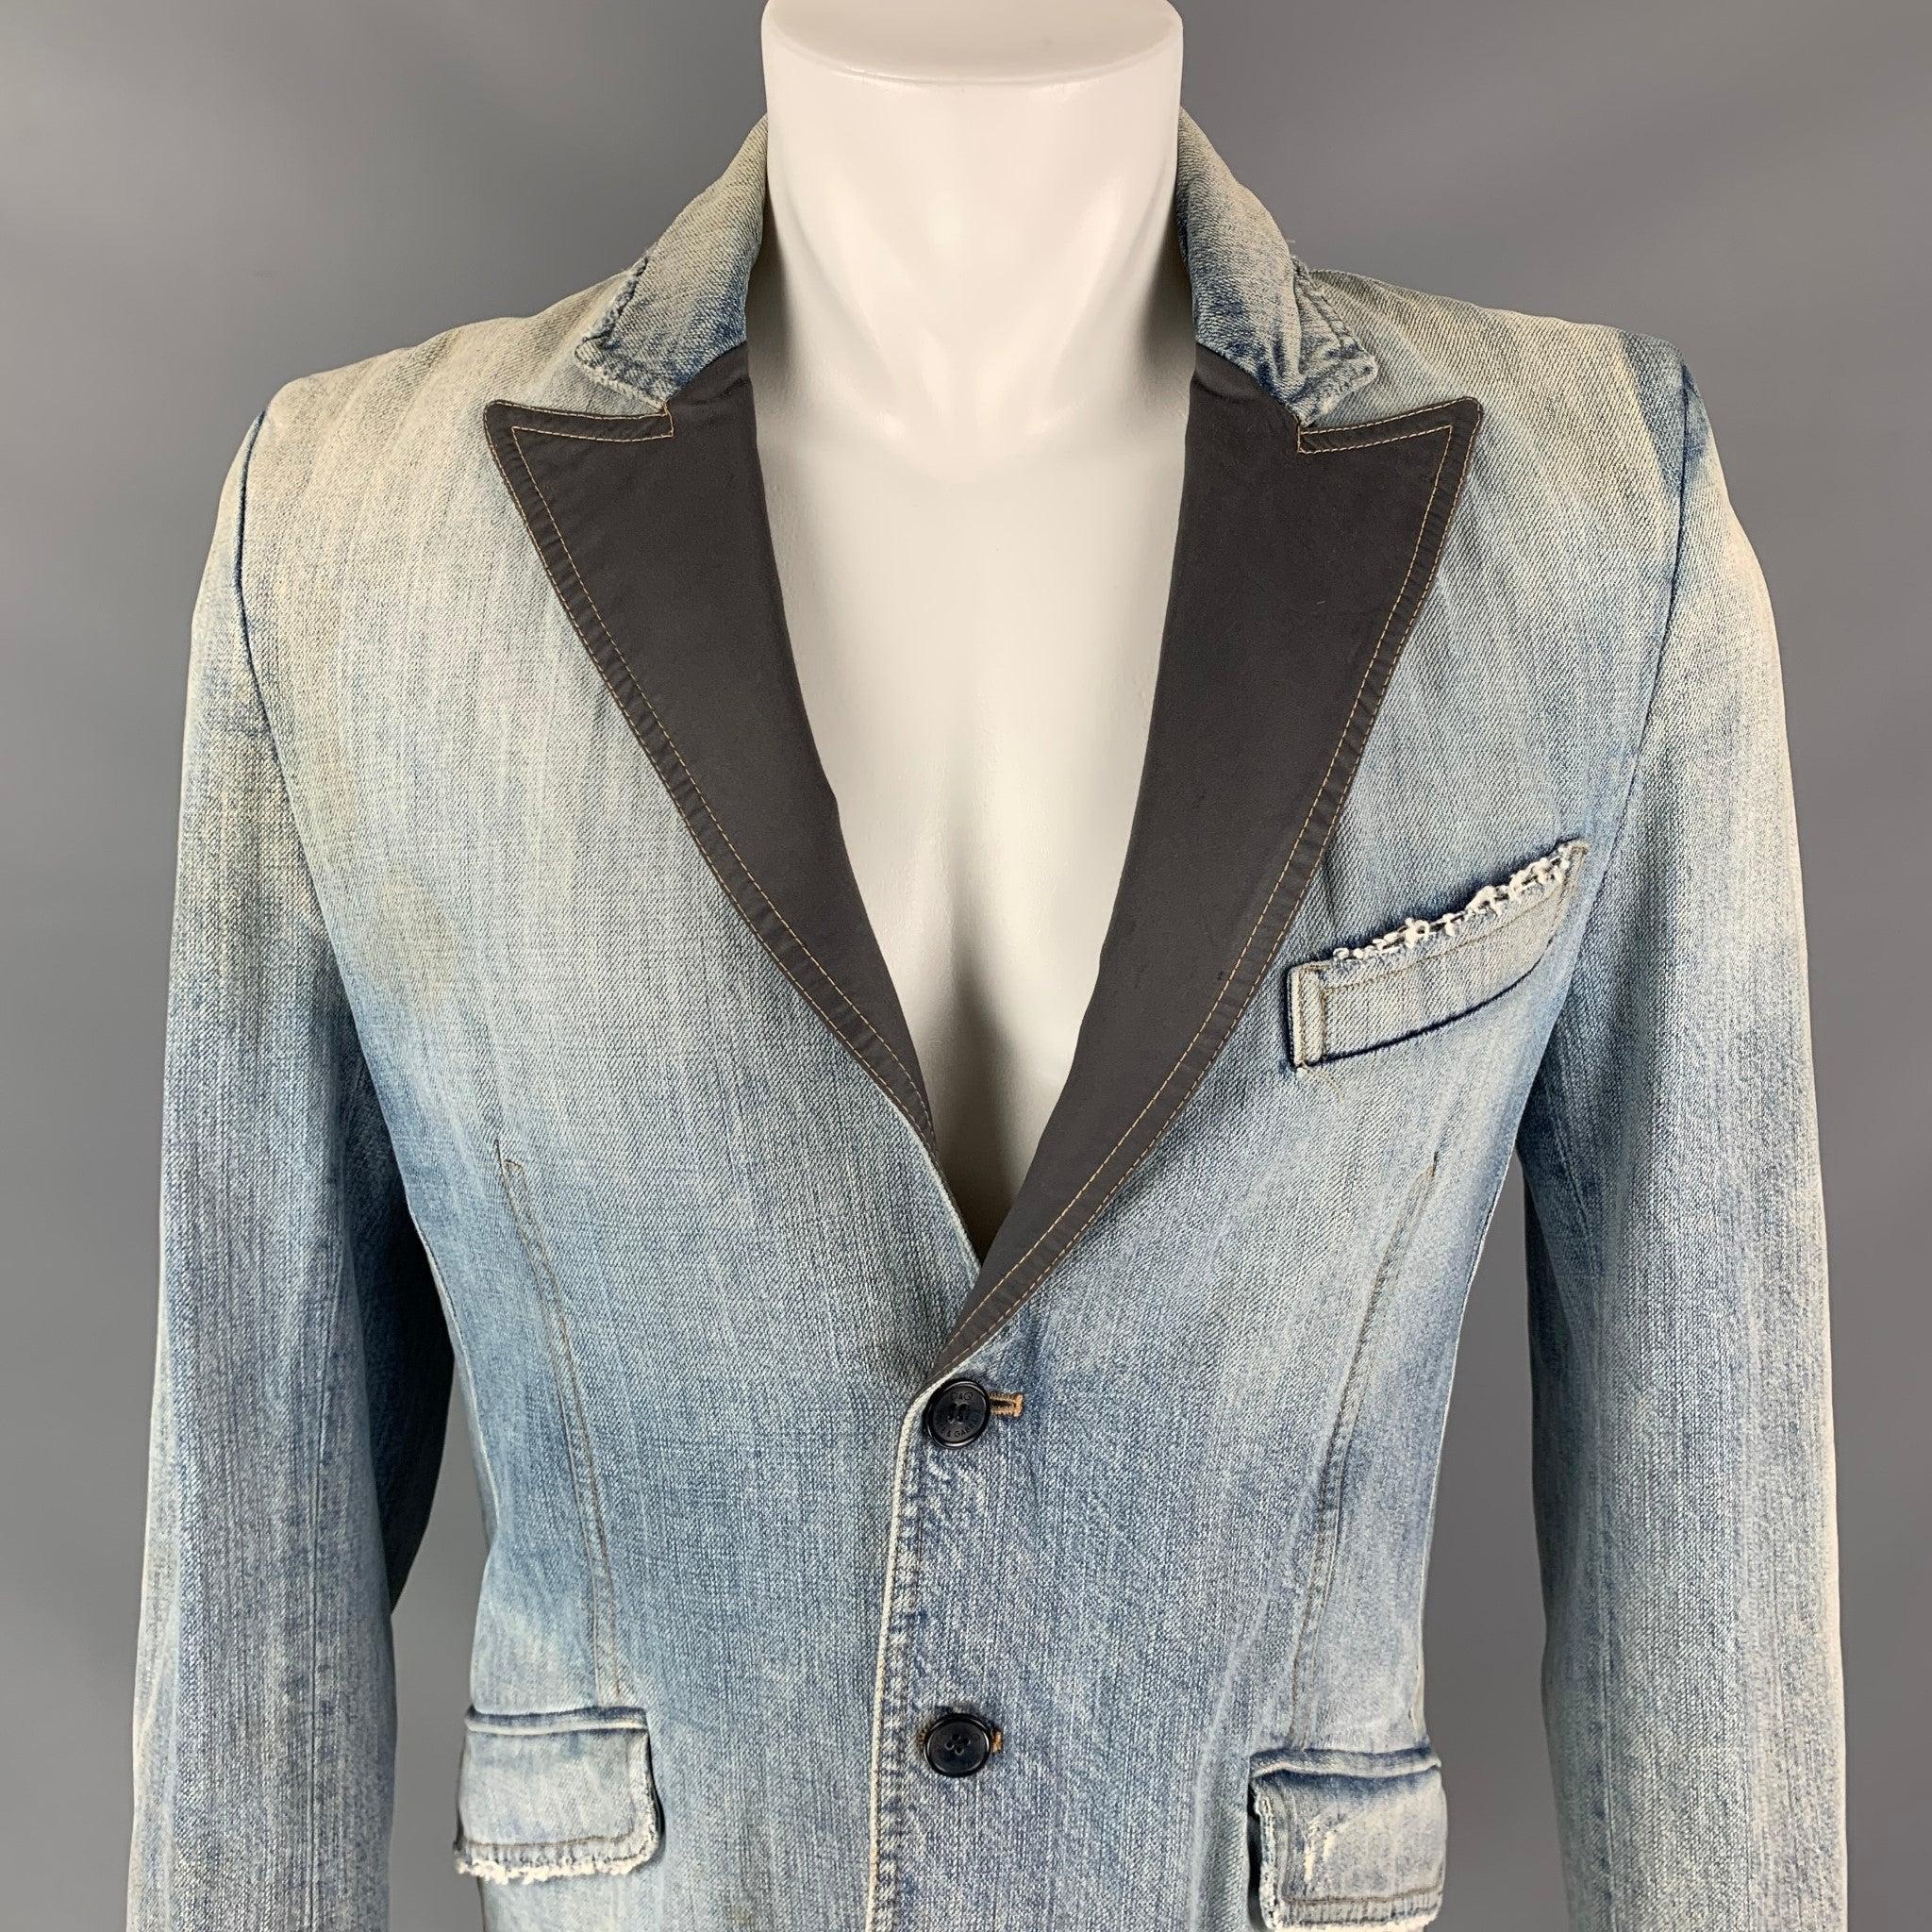 La veste D&G by DOLCE & GABBANA se présente dans un denim bleu délavé avec une doublure intégrale. Elle présente un revers gris à visière, une seule fente au dos, des poches à rabat et une fermeture à deux boutons. Fabriquées en Italie.
Bon
Etat